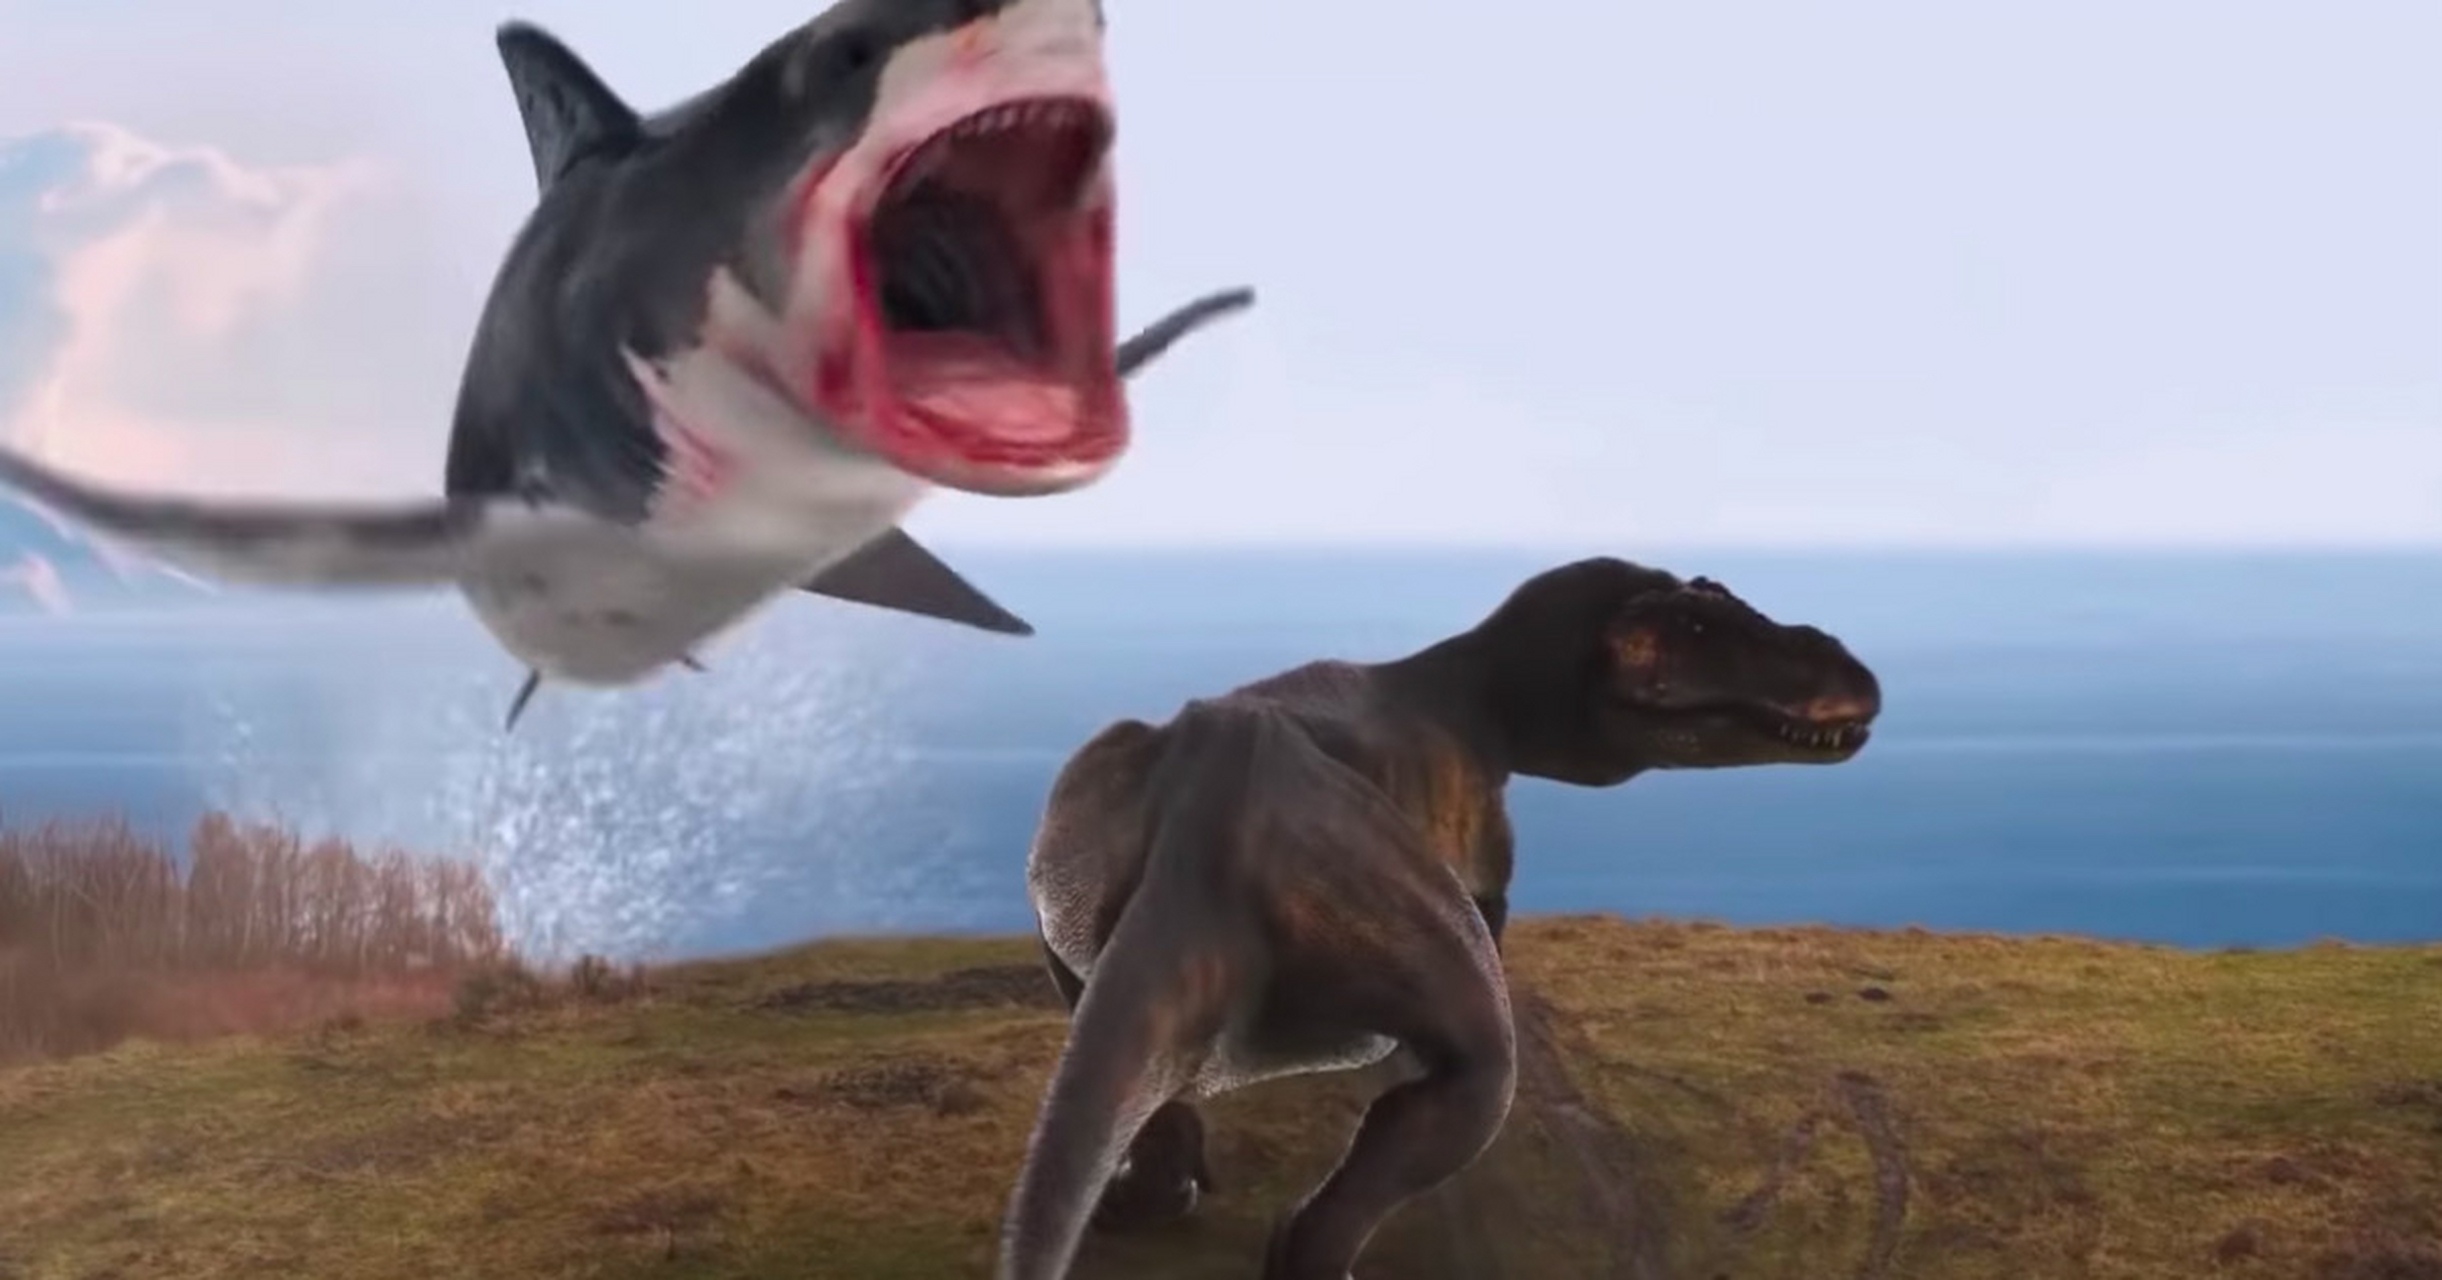 巨齿鲨vs火岩鲨图片